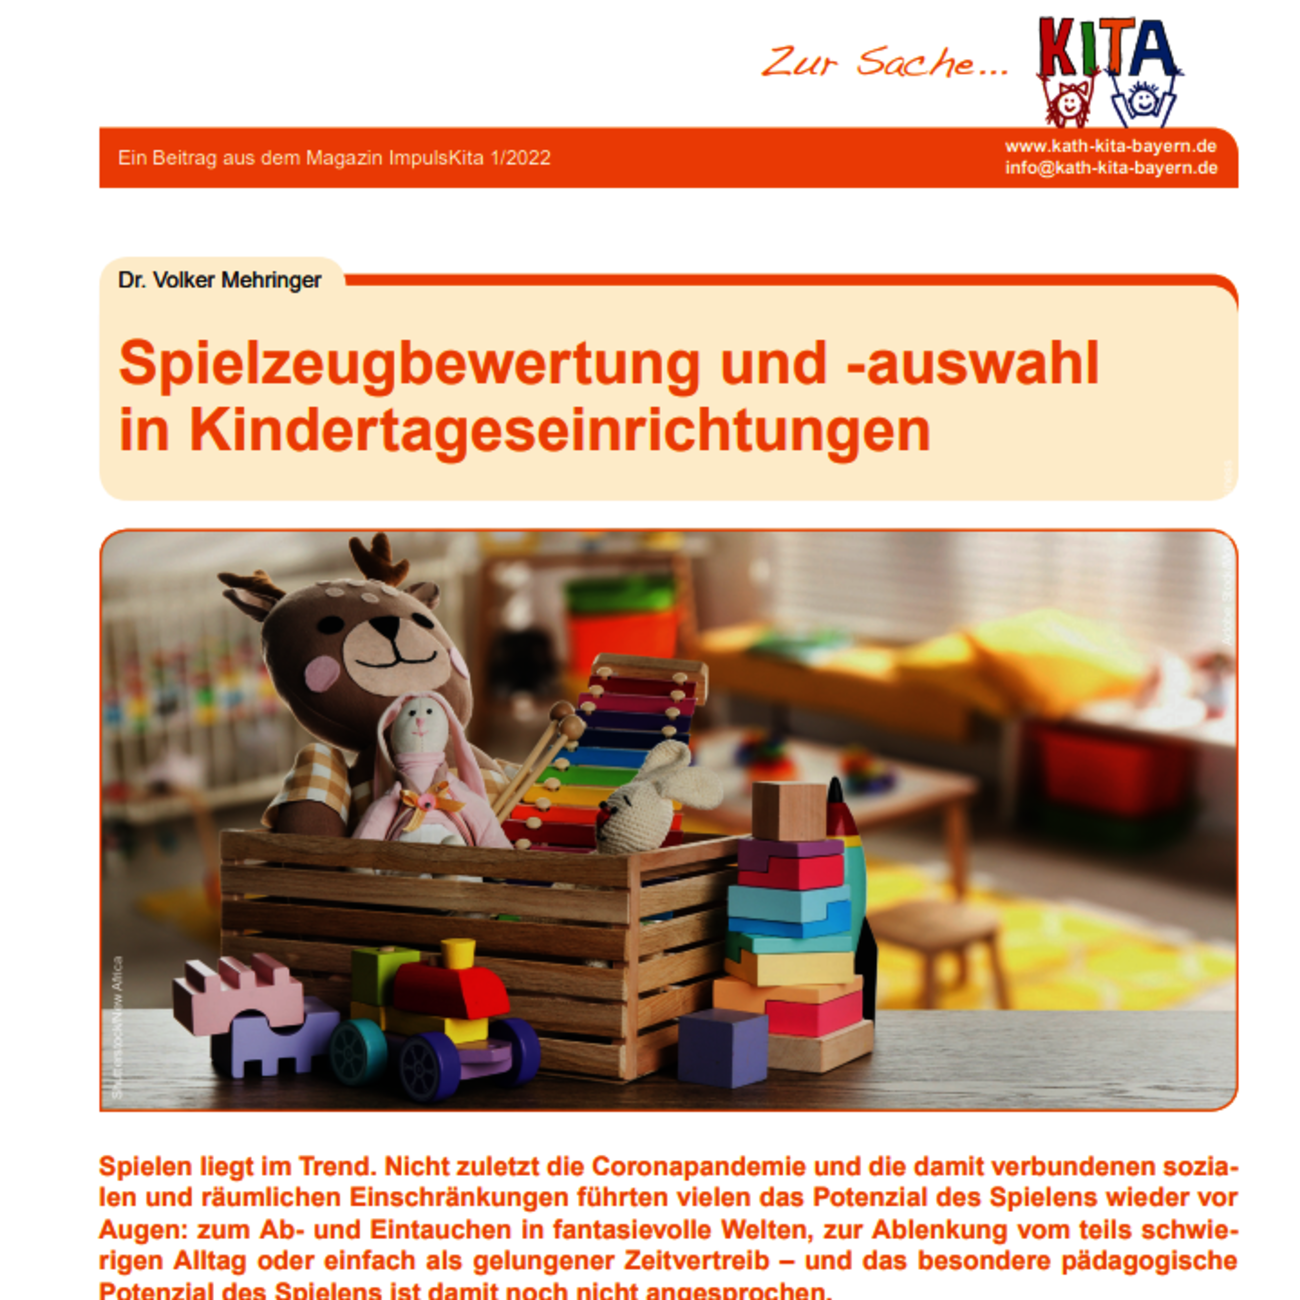 Dr. Volker Mehringer - Spielzeugbewertung und -auswahl in Kitas - 2022